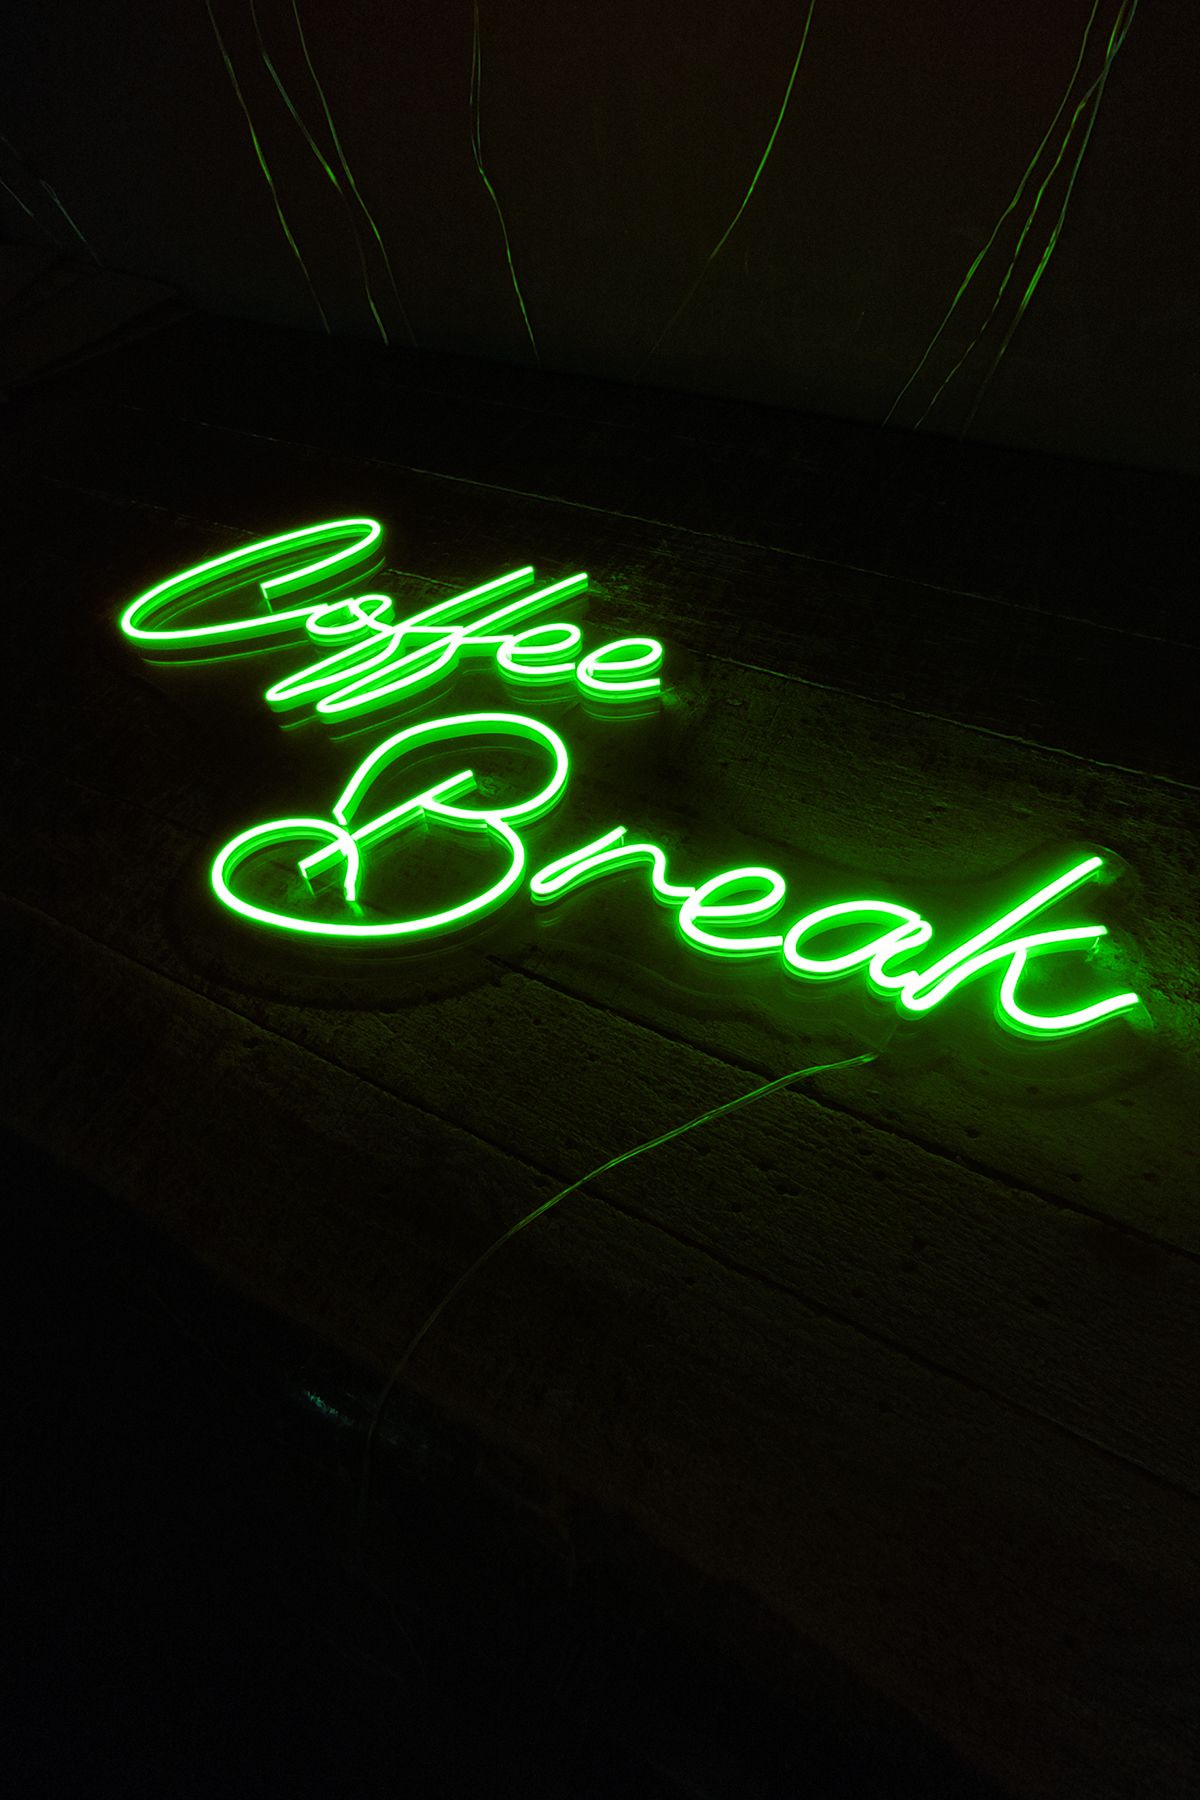 Işıklı Coffee Break: Neon LED Tabela Duvar Dekorasyon Ürünü